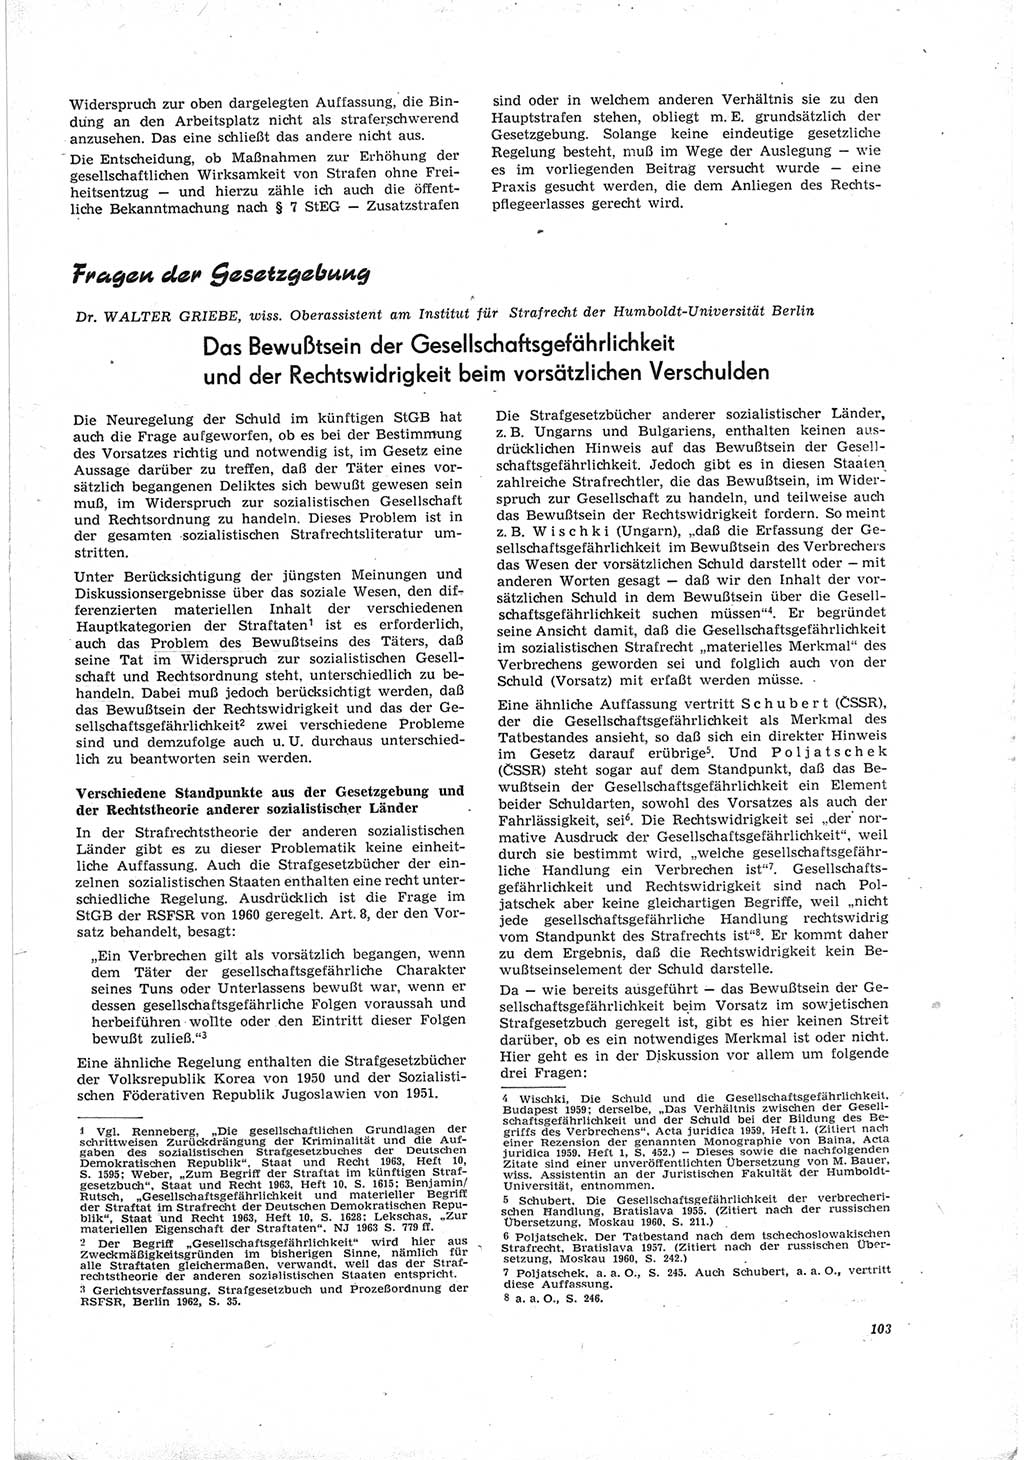 Neue Justiz (NJ), Zeitschrift für Recht und Rechtswissenschaft [Deutsche Demokratische Republik (DDR)], 19. Jahrgang 1965, Seite 103 (NJ DDR 1965, S. 103)